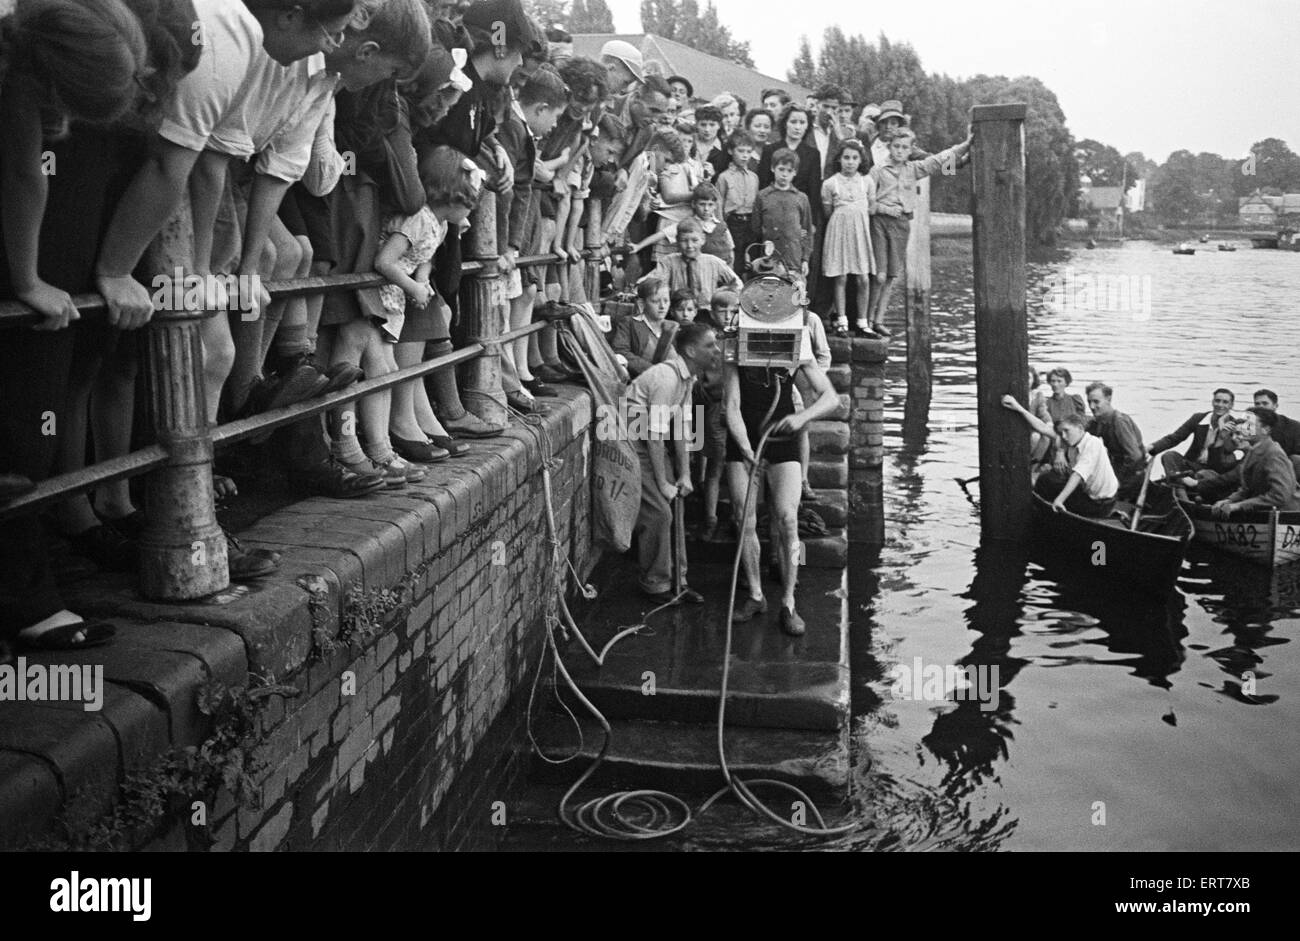 Test fuori casa fatta di attrezzature subacquee, con la folla a guardare. Wiltshire. Circa 1945. Foto Stock